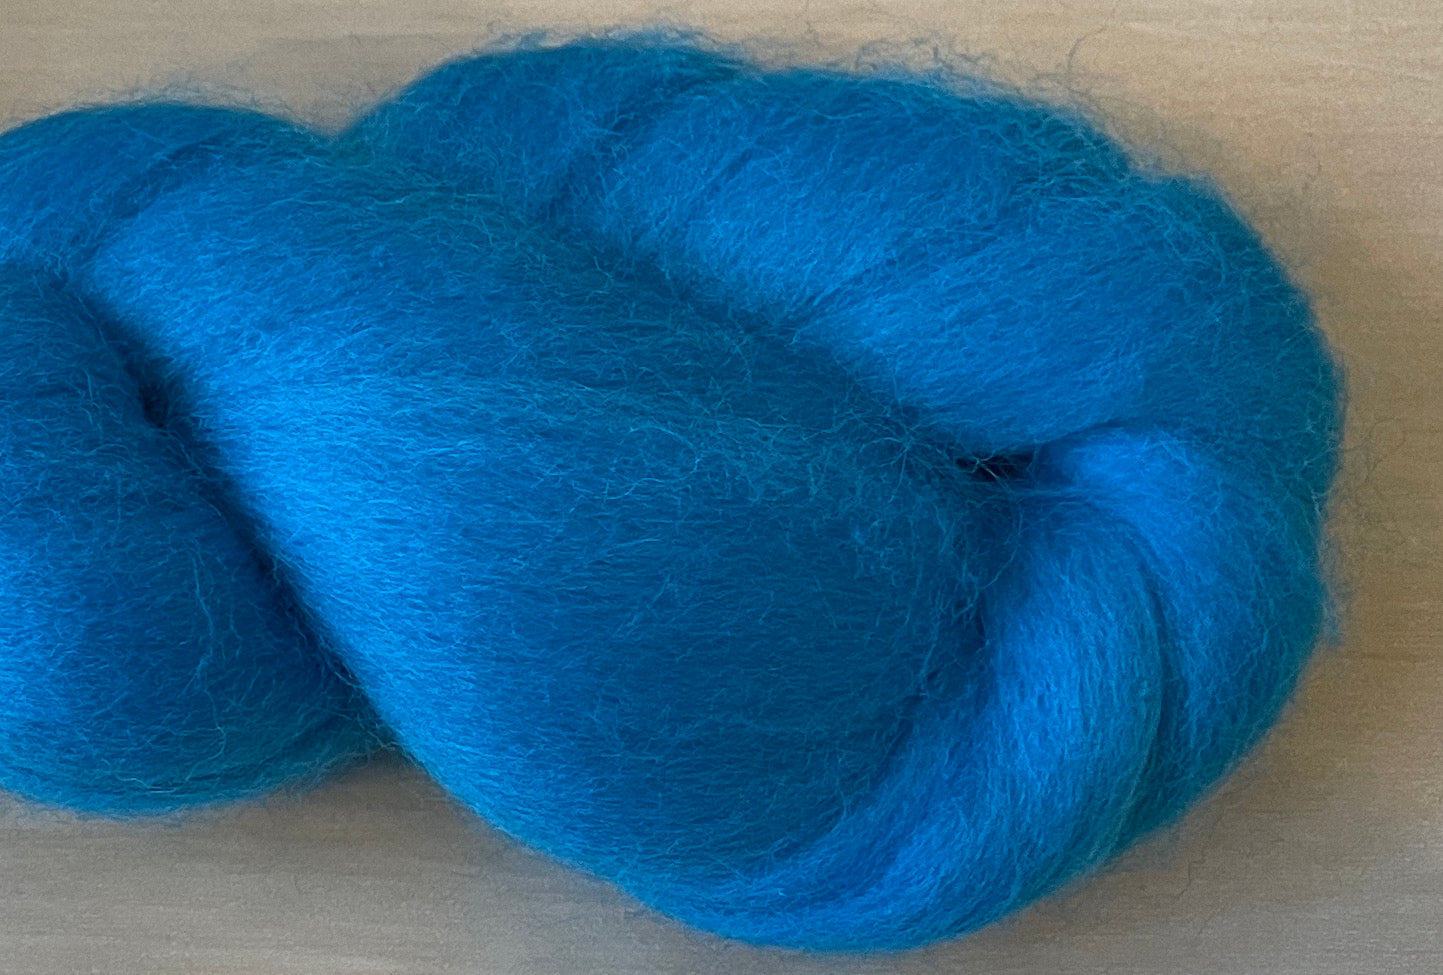 100% Merino Wool Roving - Turquoise